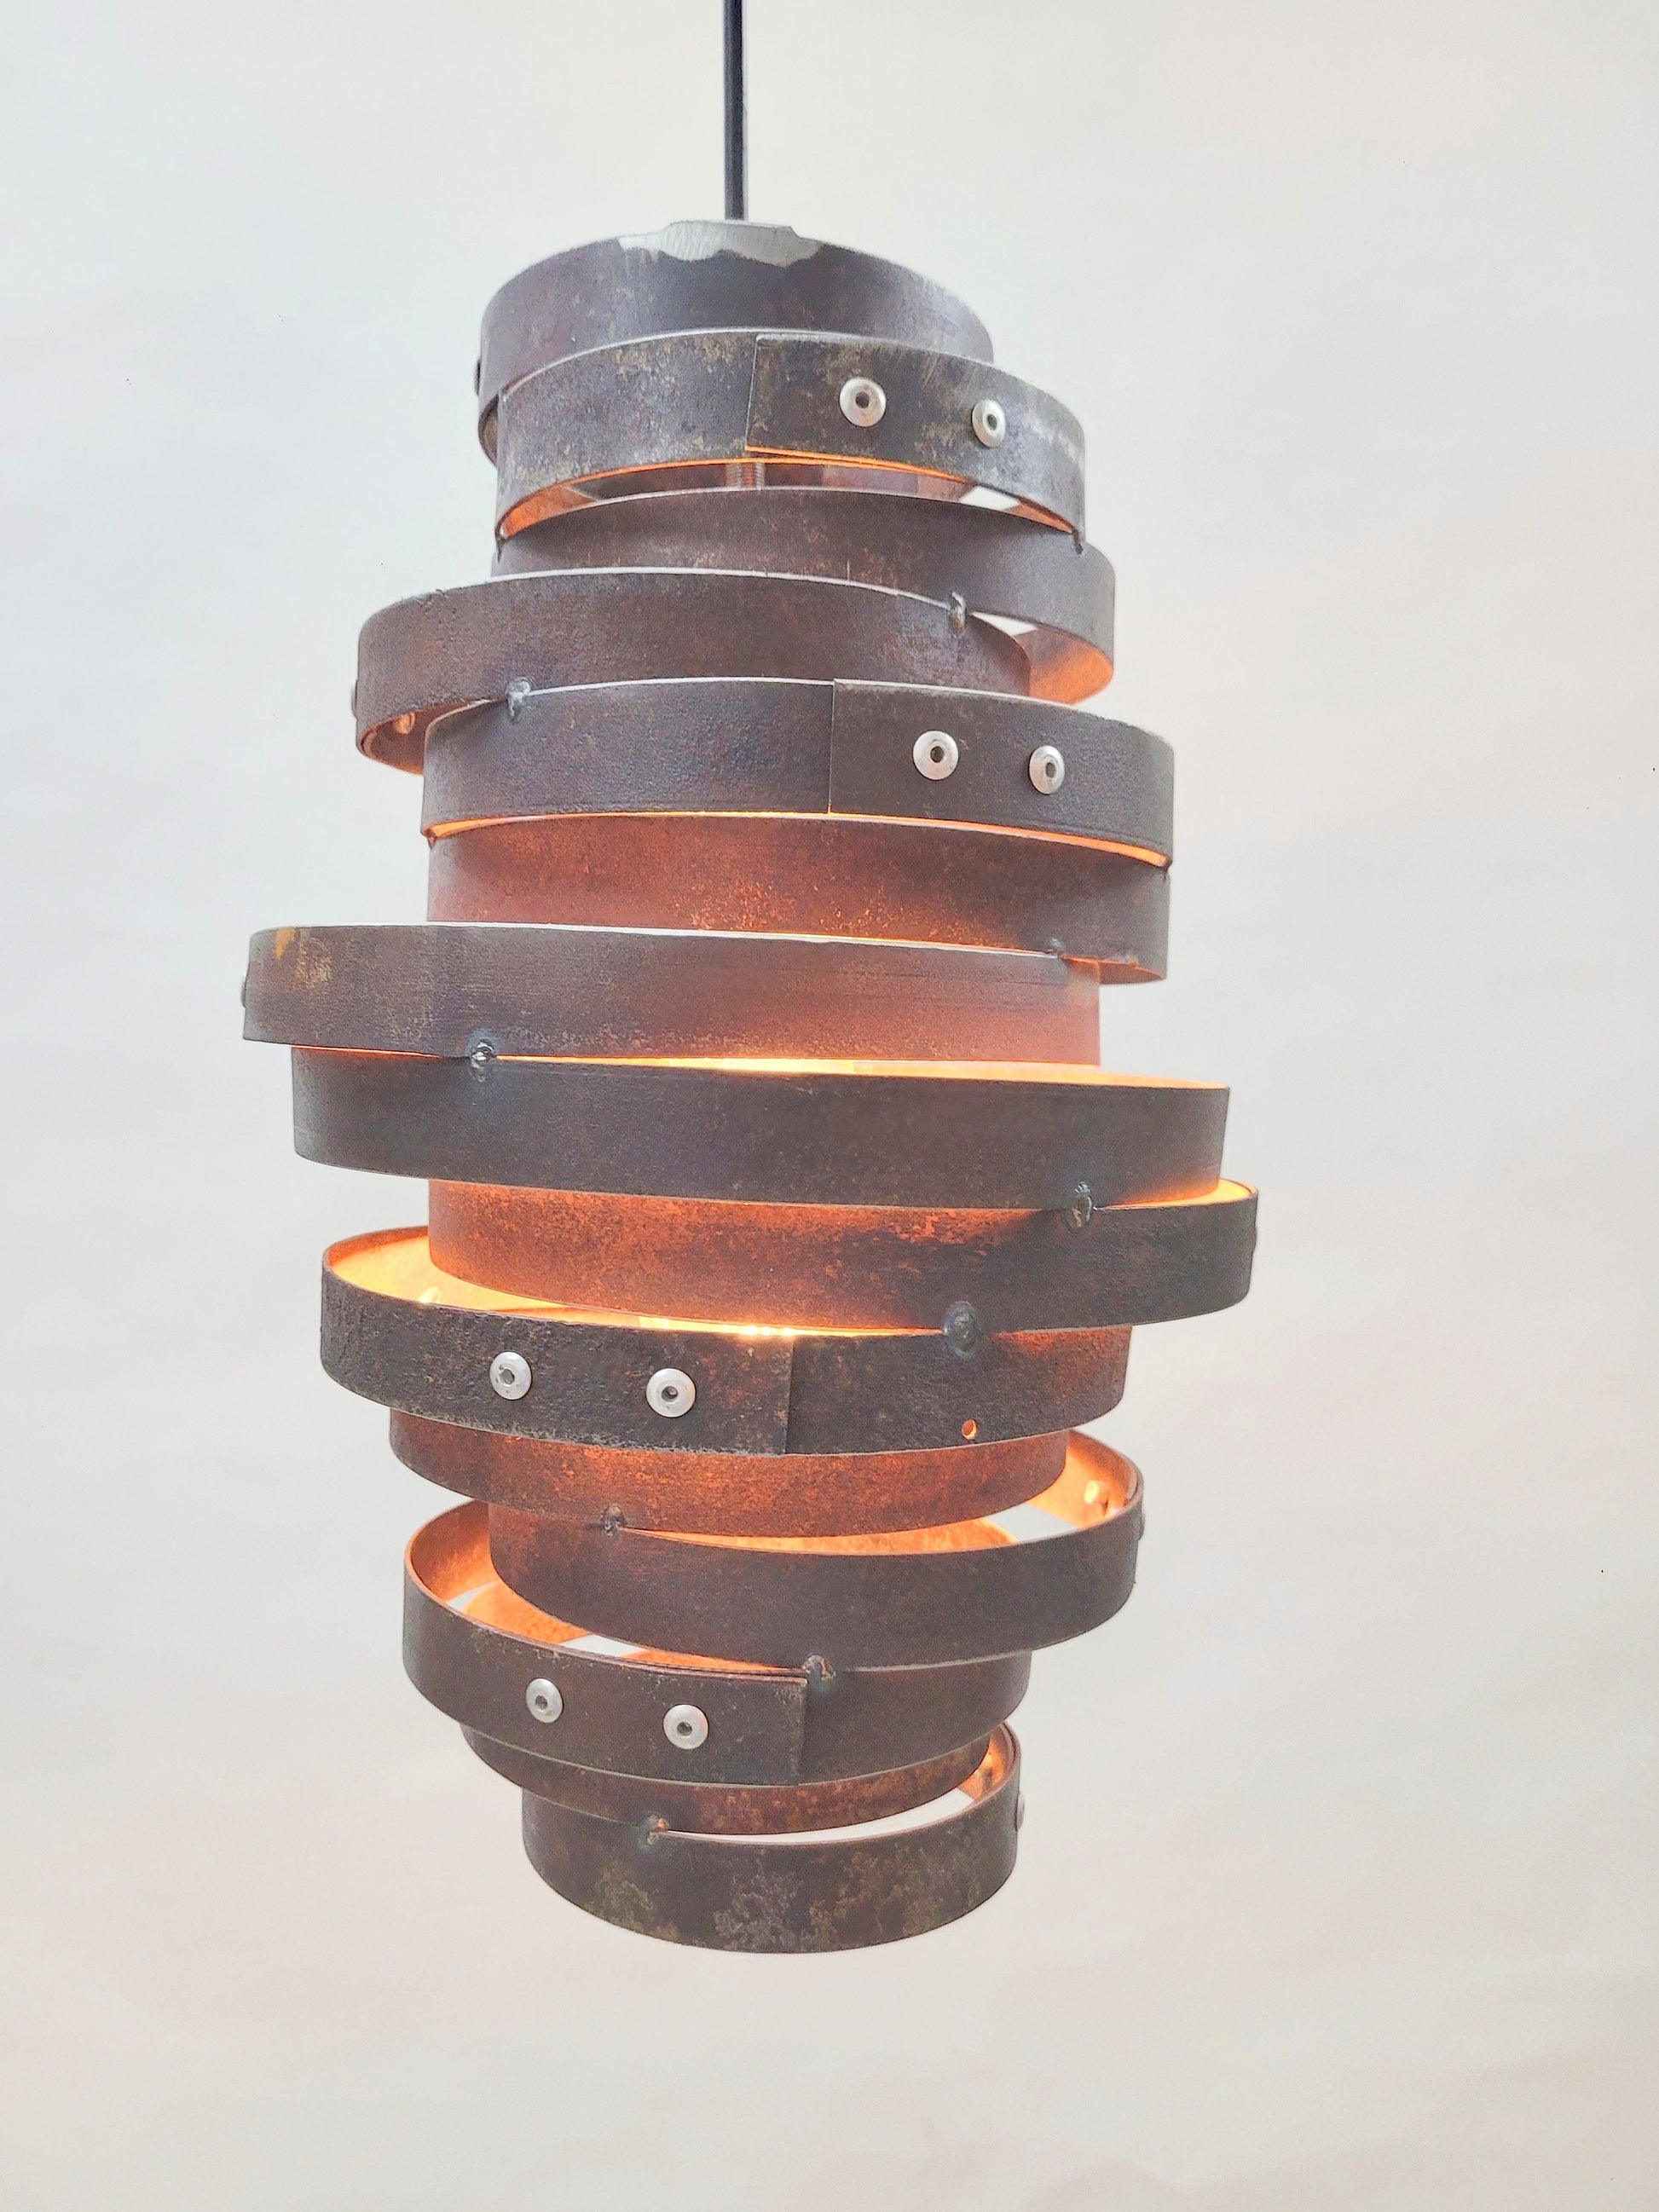 Whiskey Barrel Ring Pendant Light - ZIVA - Made from Retired Whiskey / Bourbon barrel rings. 100% Recycled!